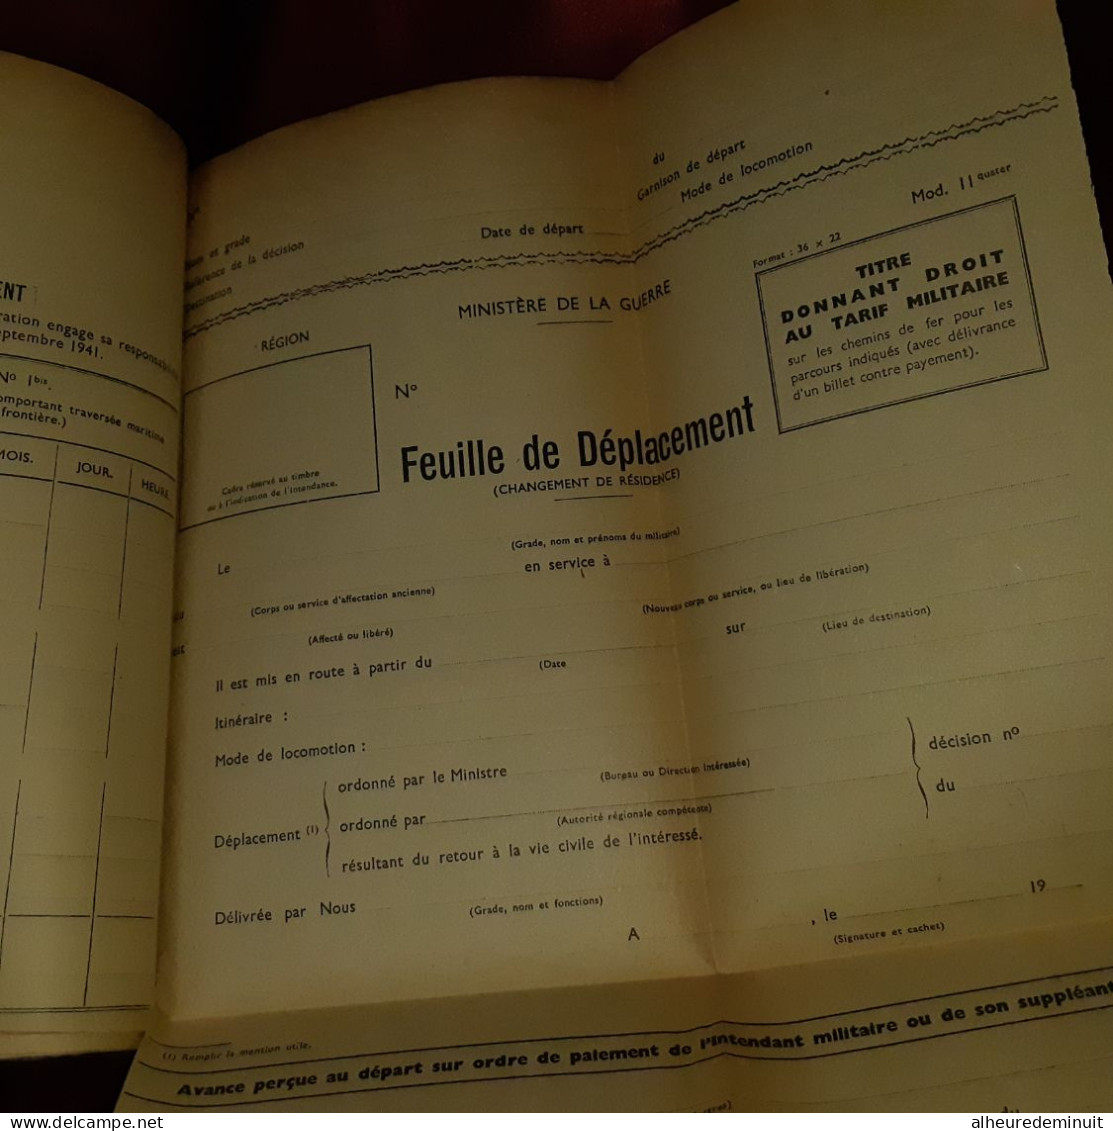 Transport de personnel par chemin de fer"Documents aux formation des trois armées"GUERRE"AIR"MARINE"S.N.C.F"Rail"TRAIN"1